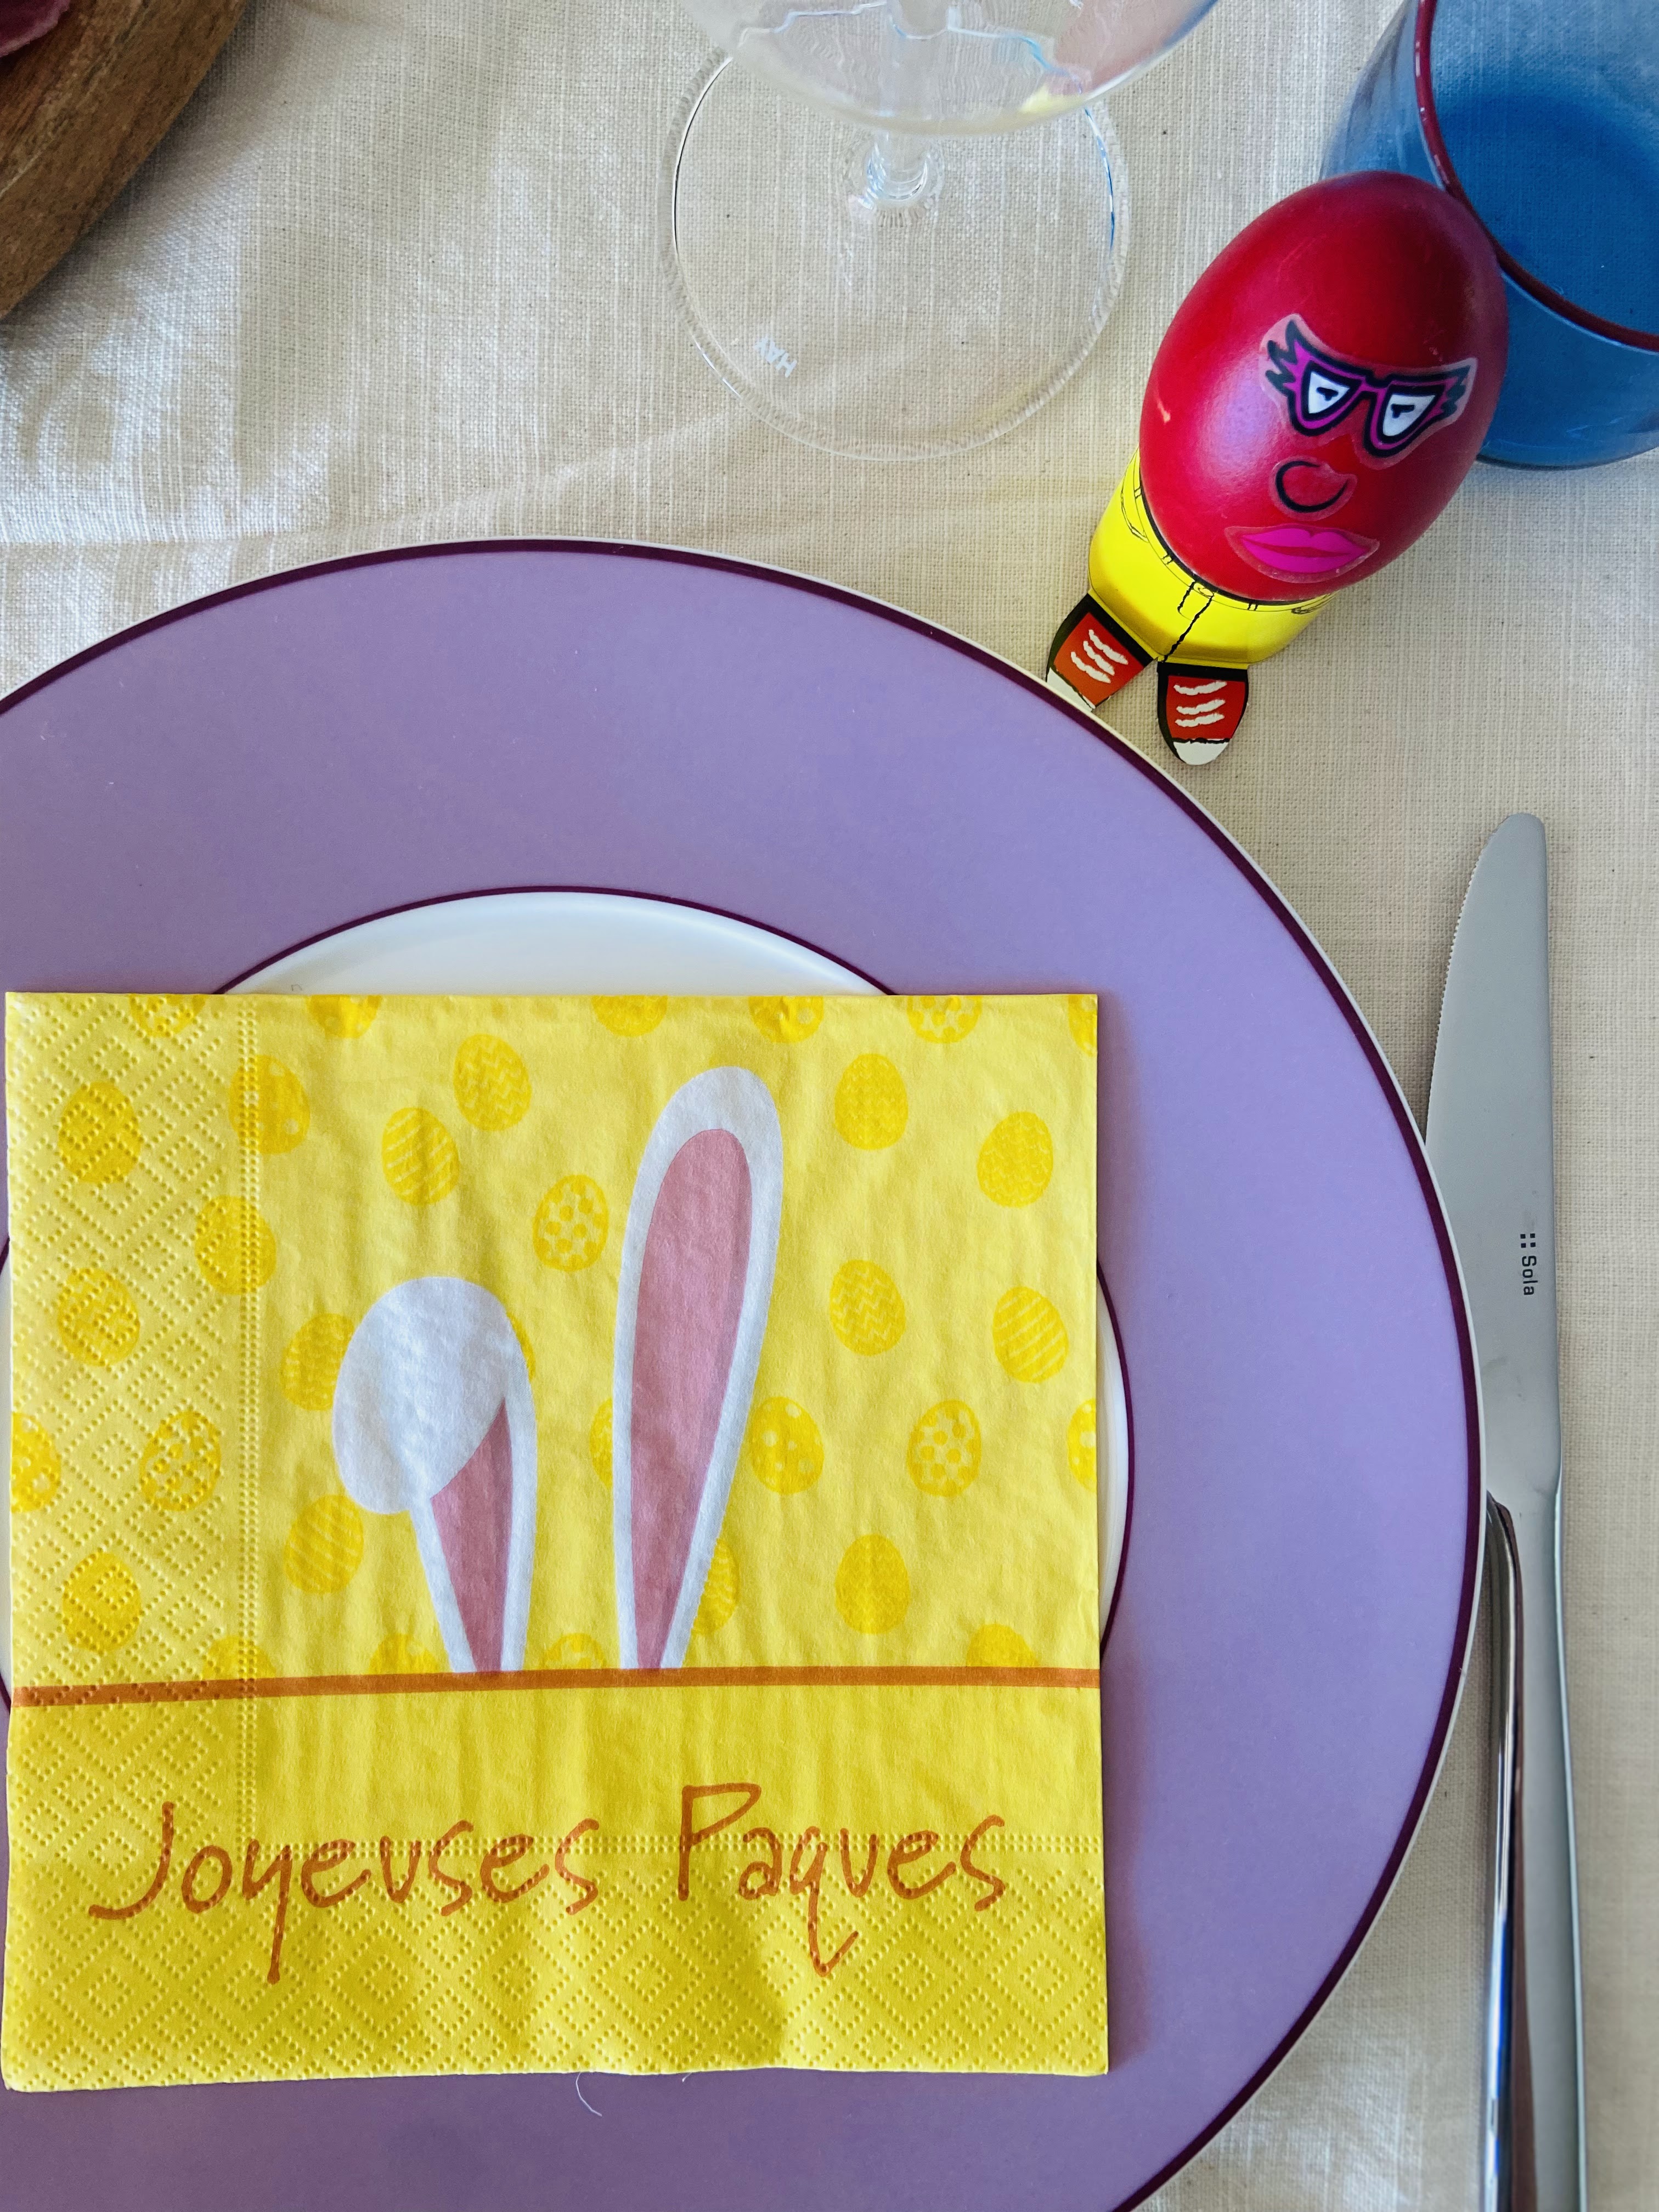 πάσχα ελβετία τραπέζι στολισμός χαρτοπετσέτα αβγό κόκκινο θήκη λωζάνη έλληνες